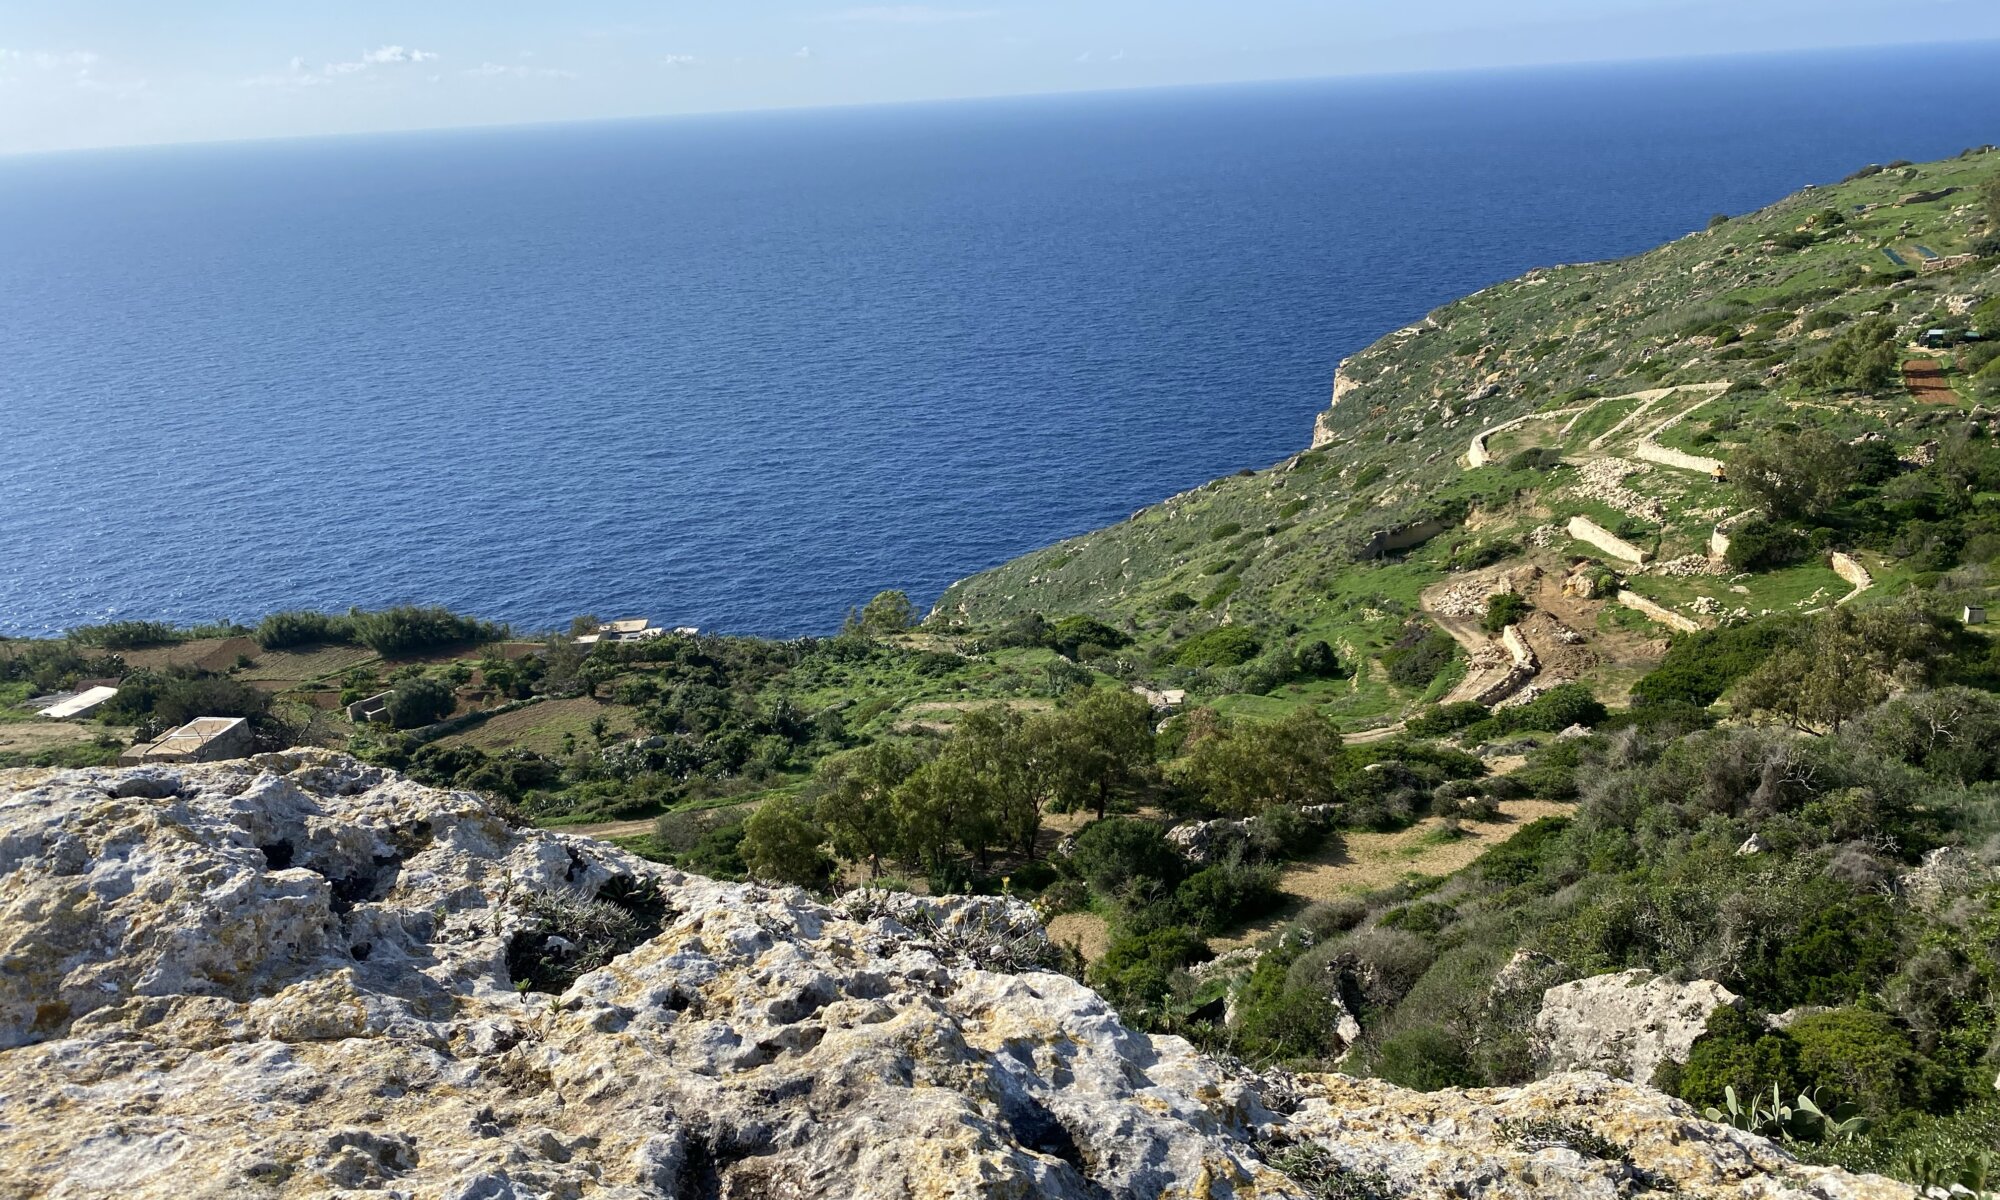 Dingi cliffs, Ħad-Dingli